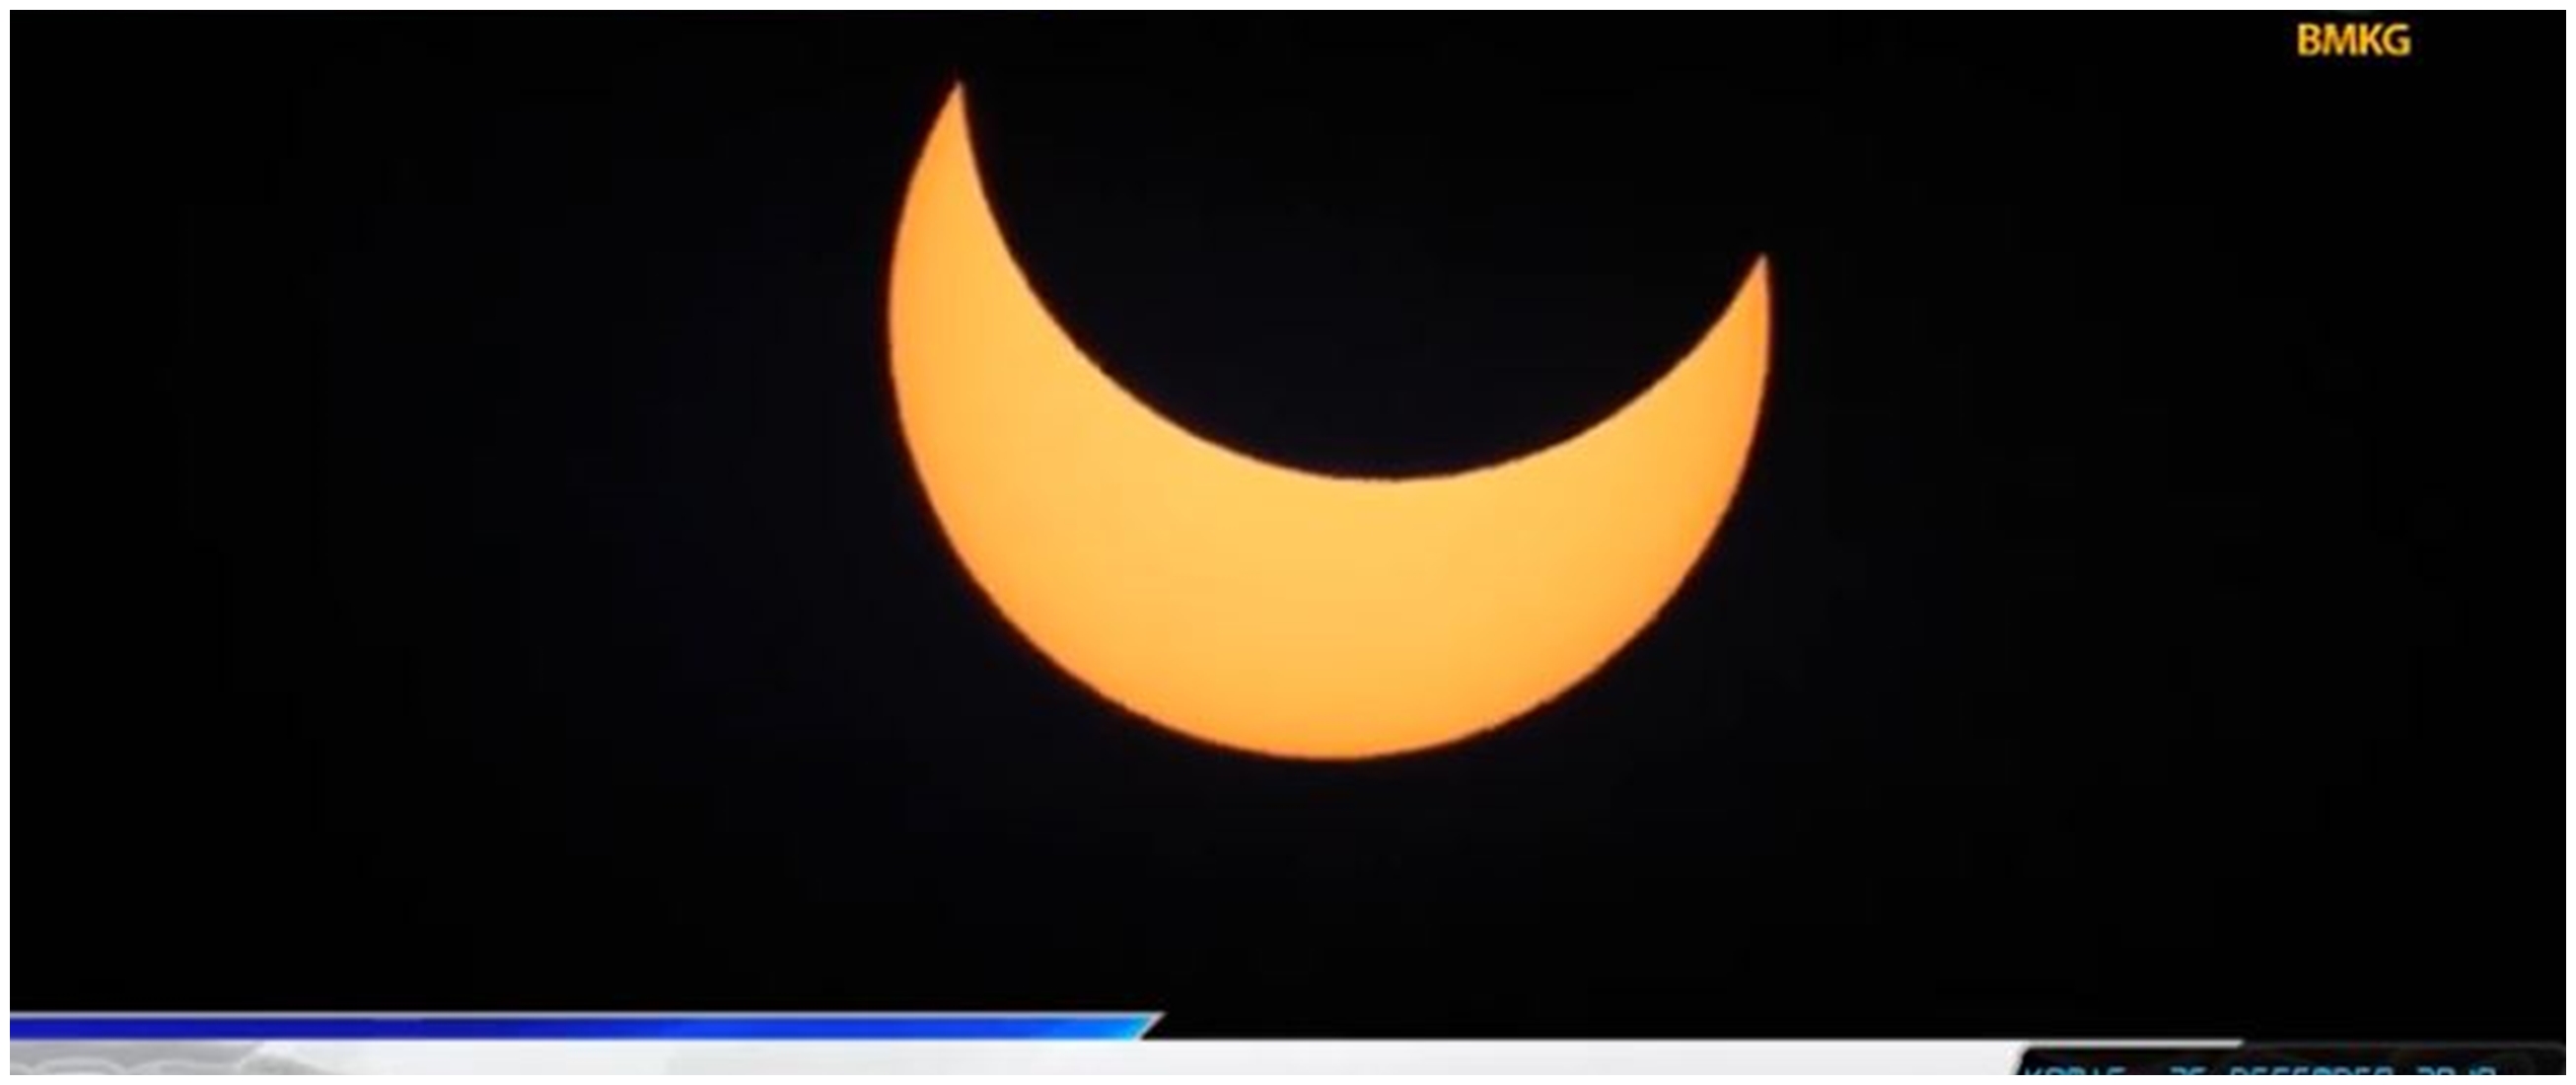 6 Potret fenomena alam gerhana matahari cincin, bikin kagum